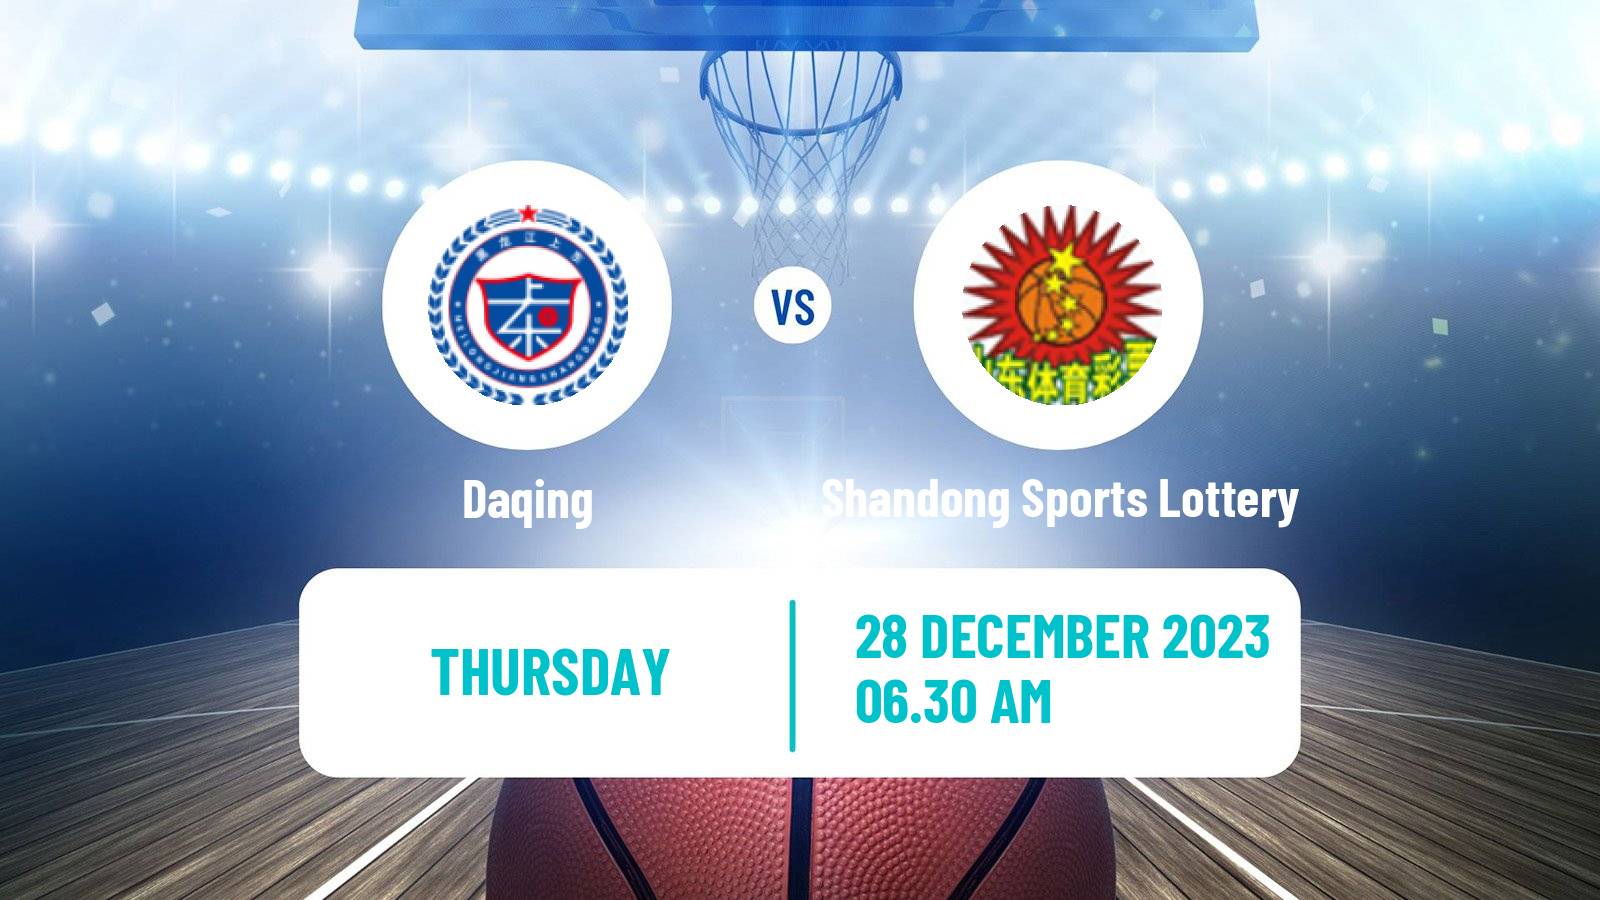 Basketball WCBA Daqing - Shandong Sports Lottery